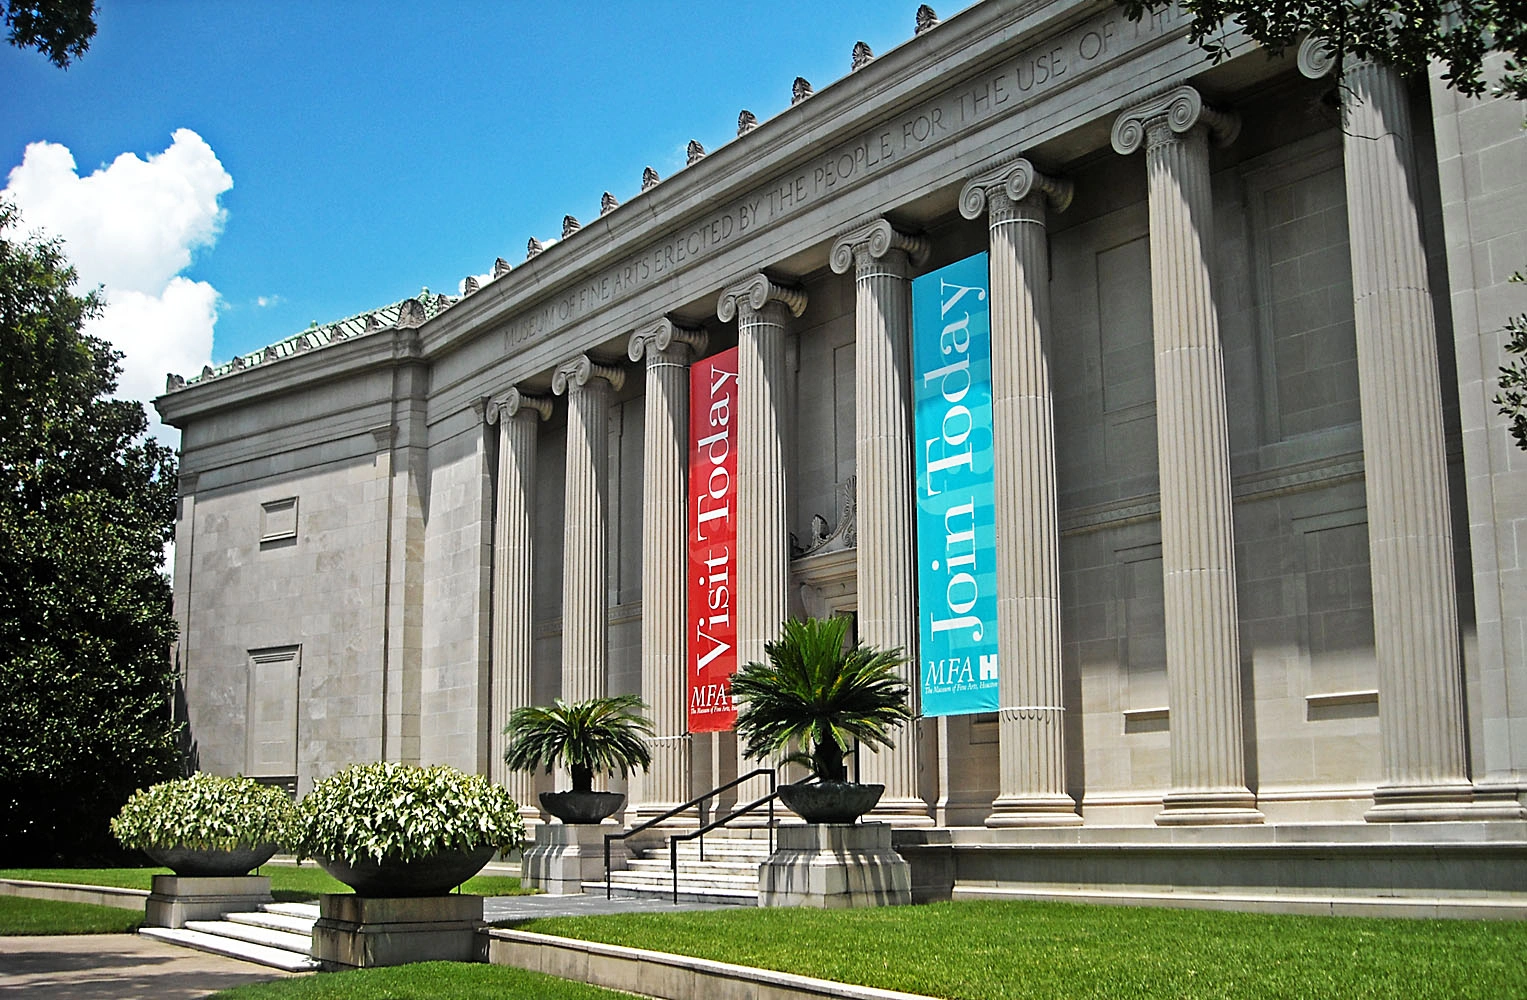 Explore Museum of Fine Arts 